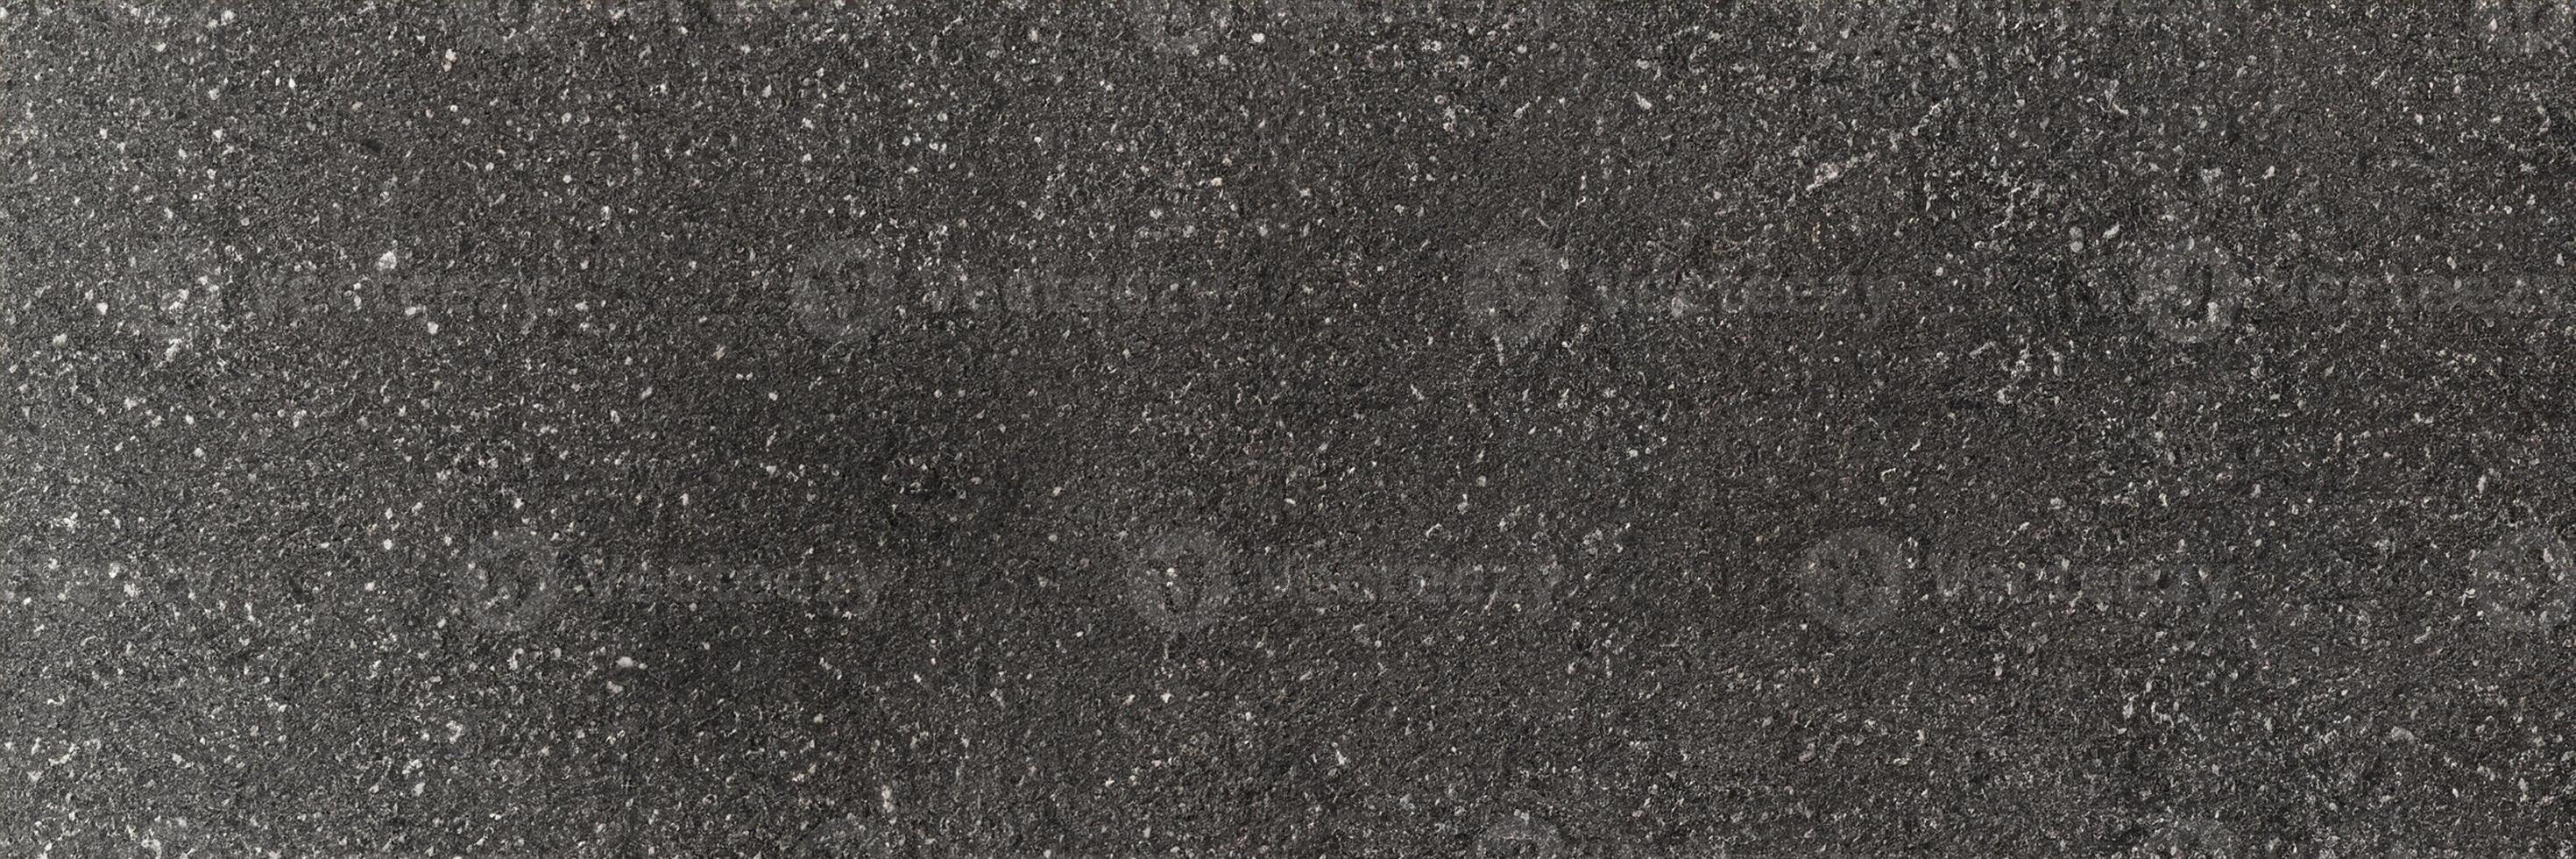 panorama Preto asfalto estrada textura e fundo. horizontal alcatrão cinzento granulado em asfalto estrada. foto